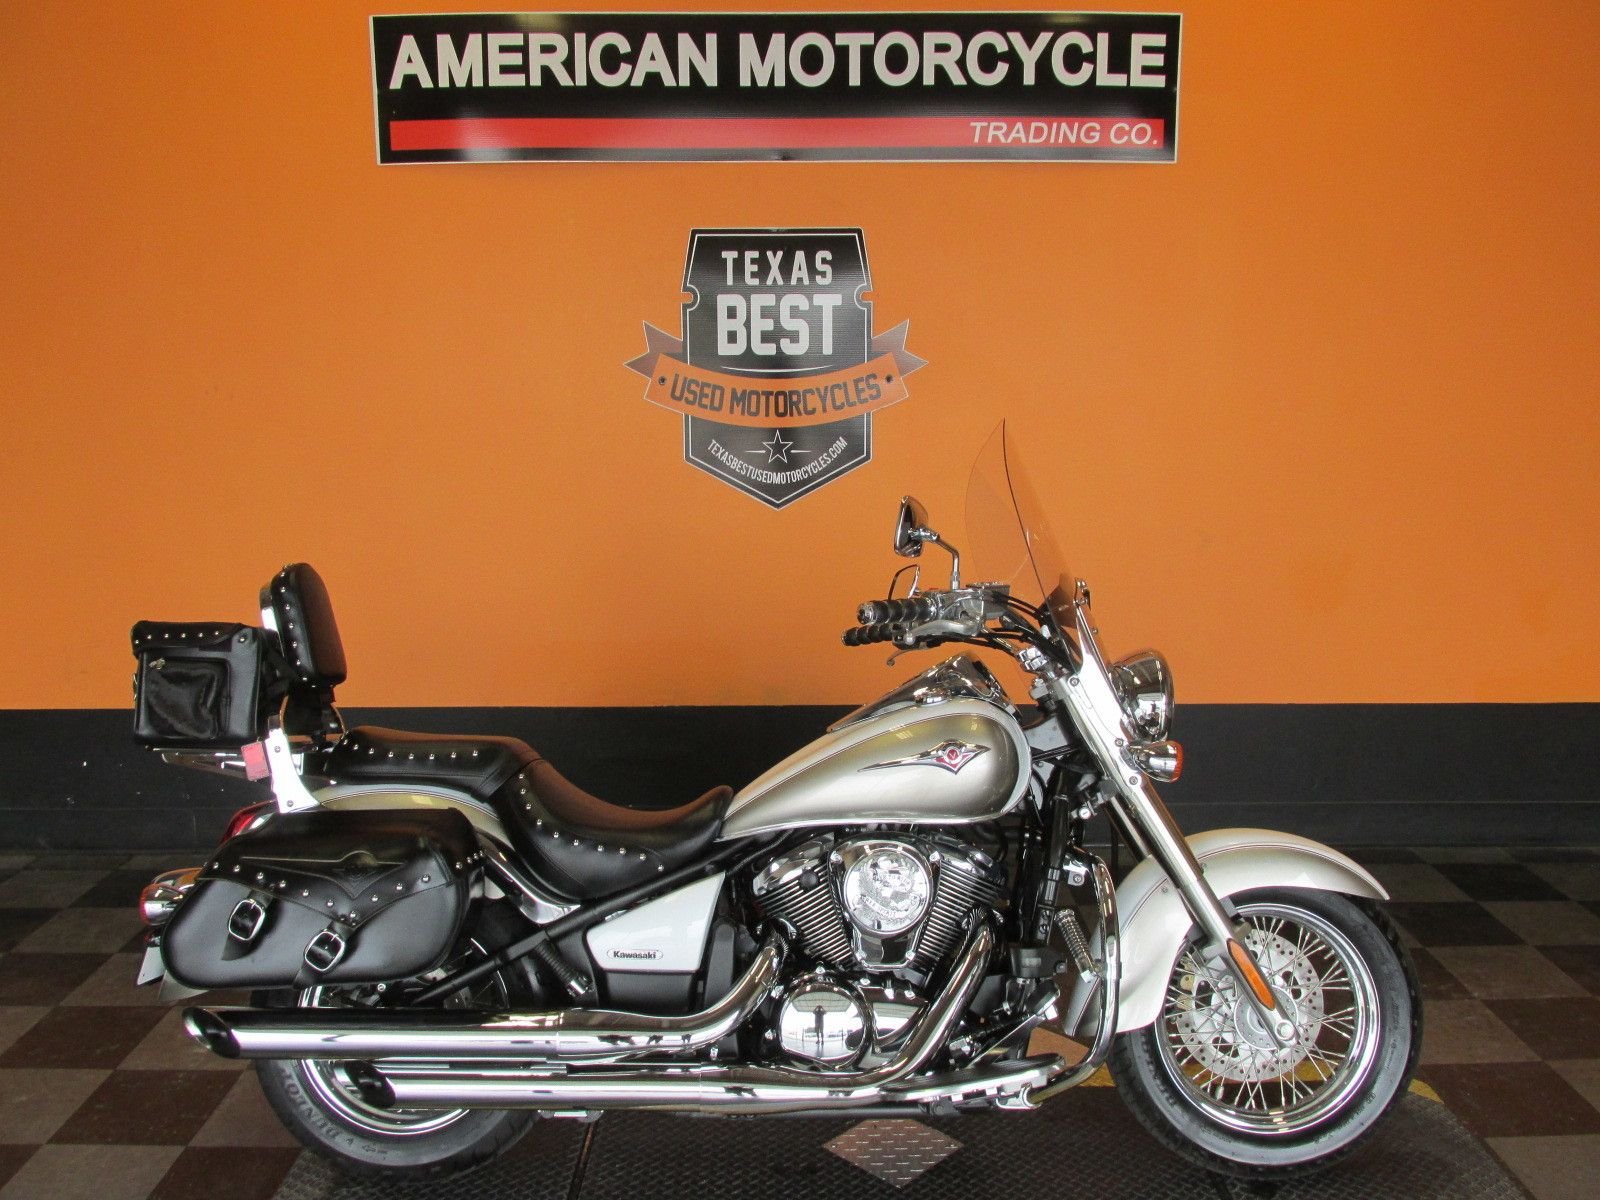 2008 Kawasaki Vulcan | American Motorcycle Trading Company - Used Harley  Davidson Motorcycles